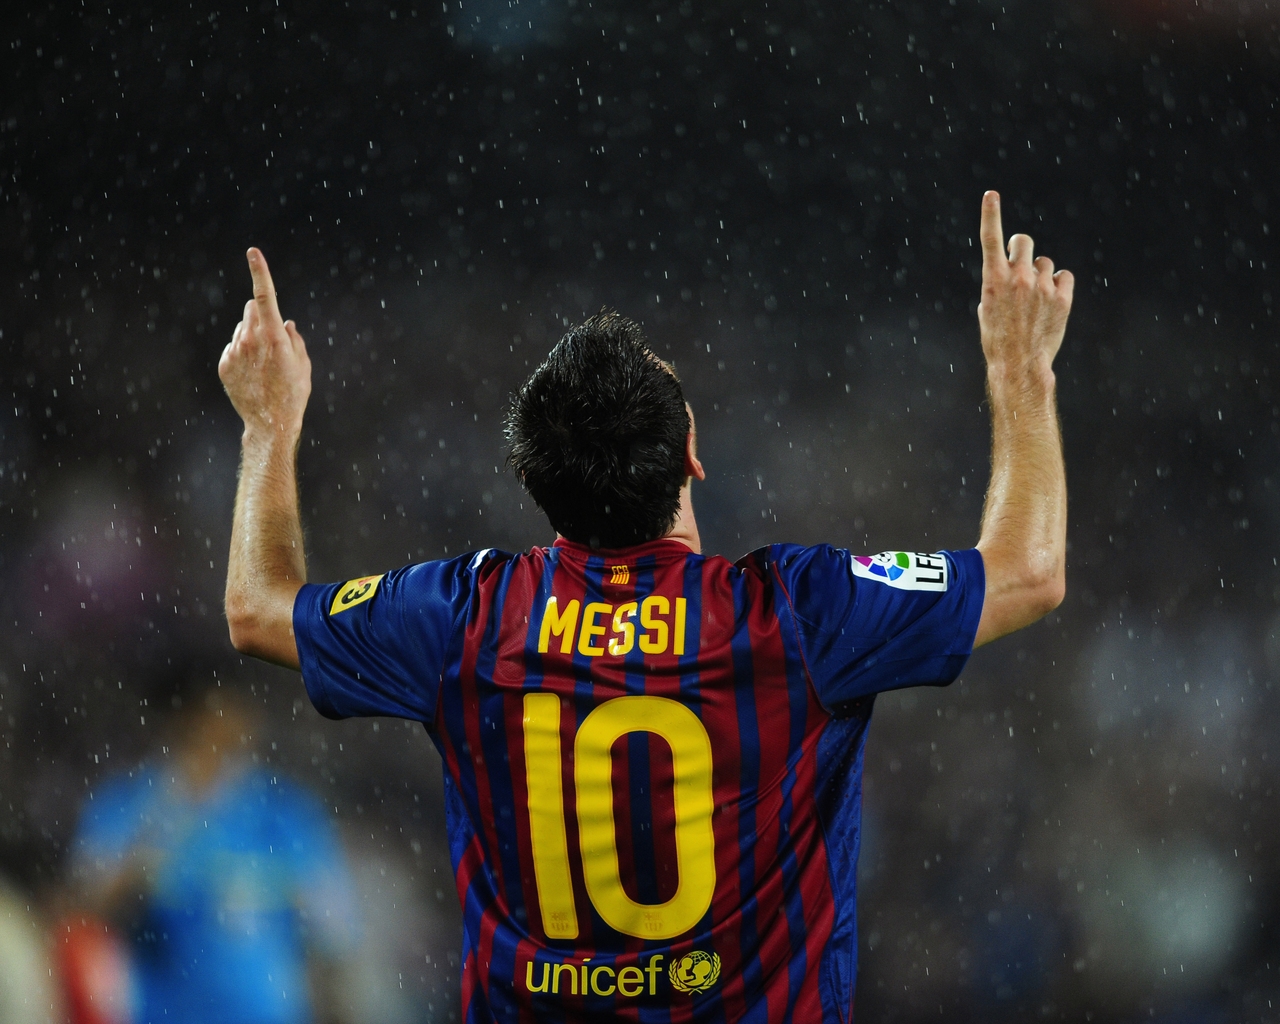 Lionel Messi in Rain for 1280 x 1024 resolution